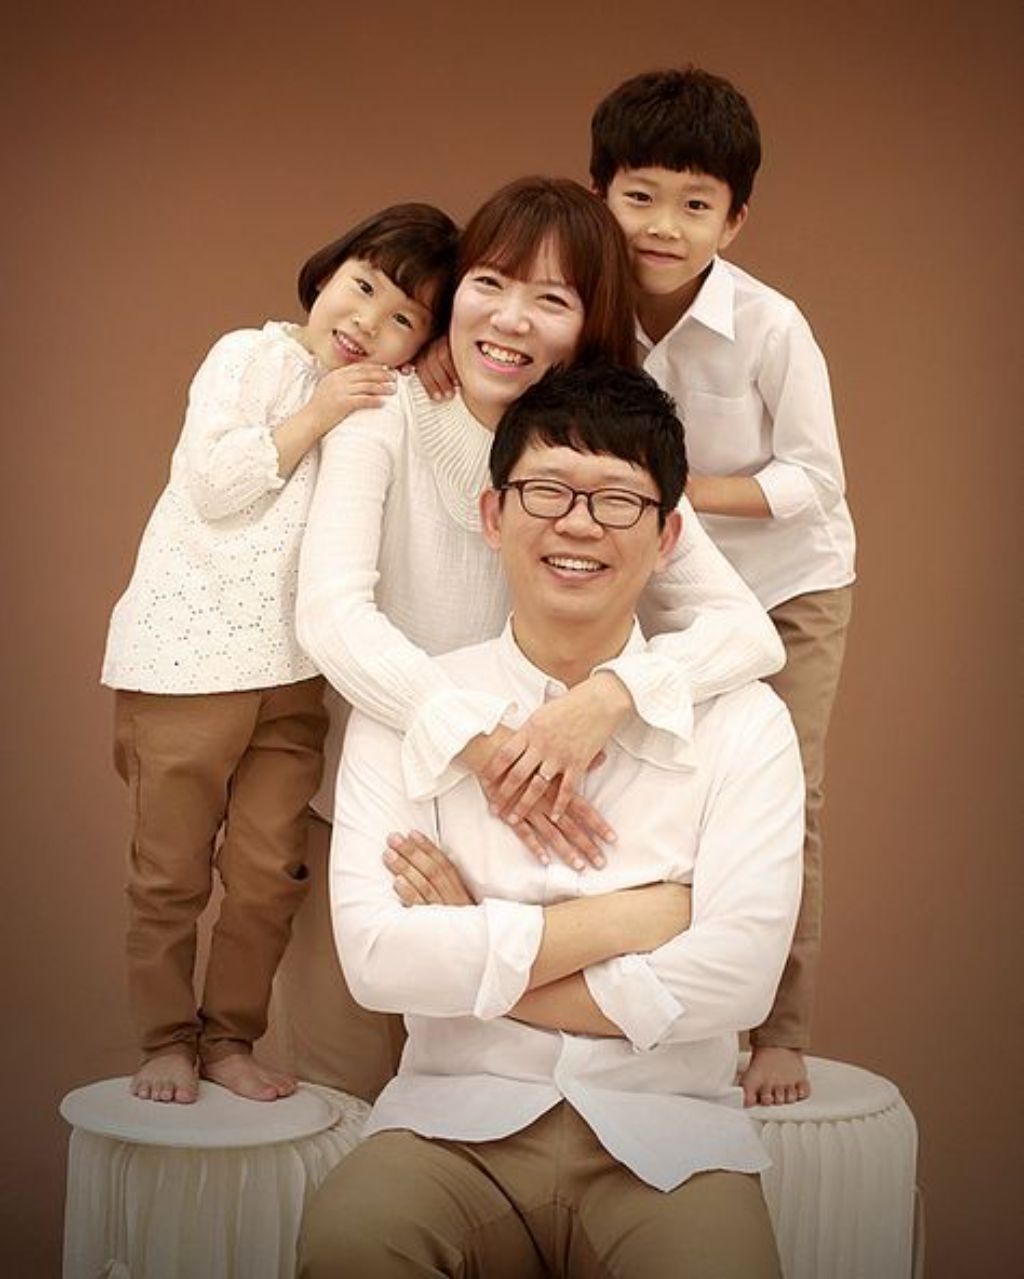 Hin’s Studio – Studio chụp ảnh gia đình ở Đà Nẵng rất được yêu thích hiện nay